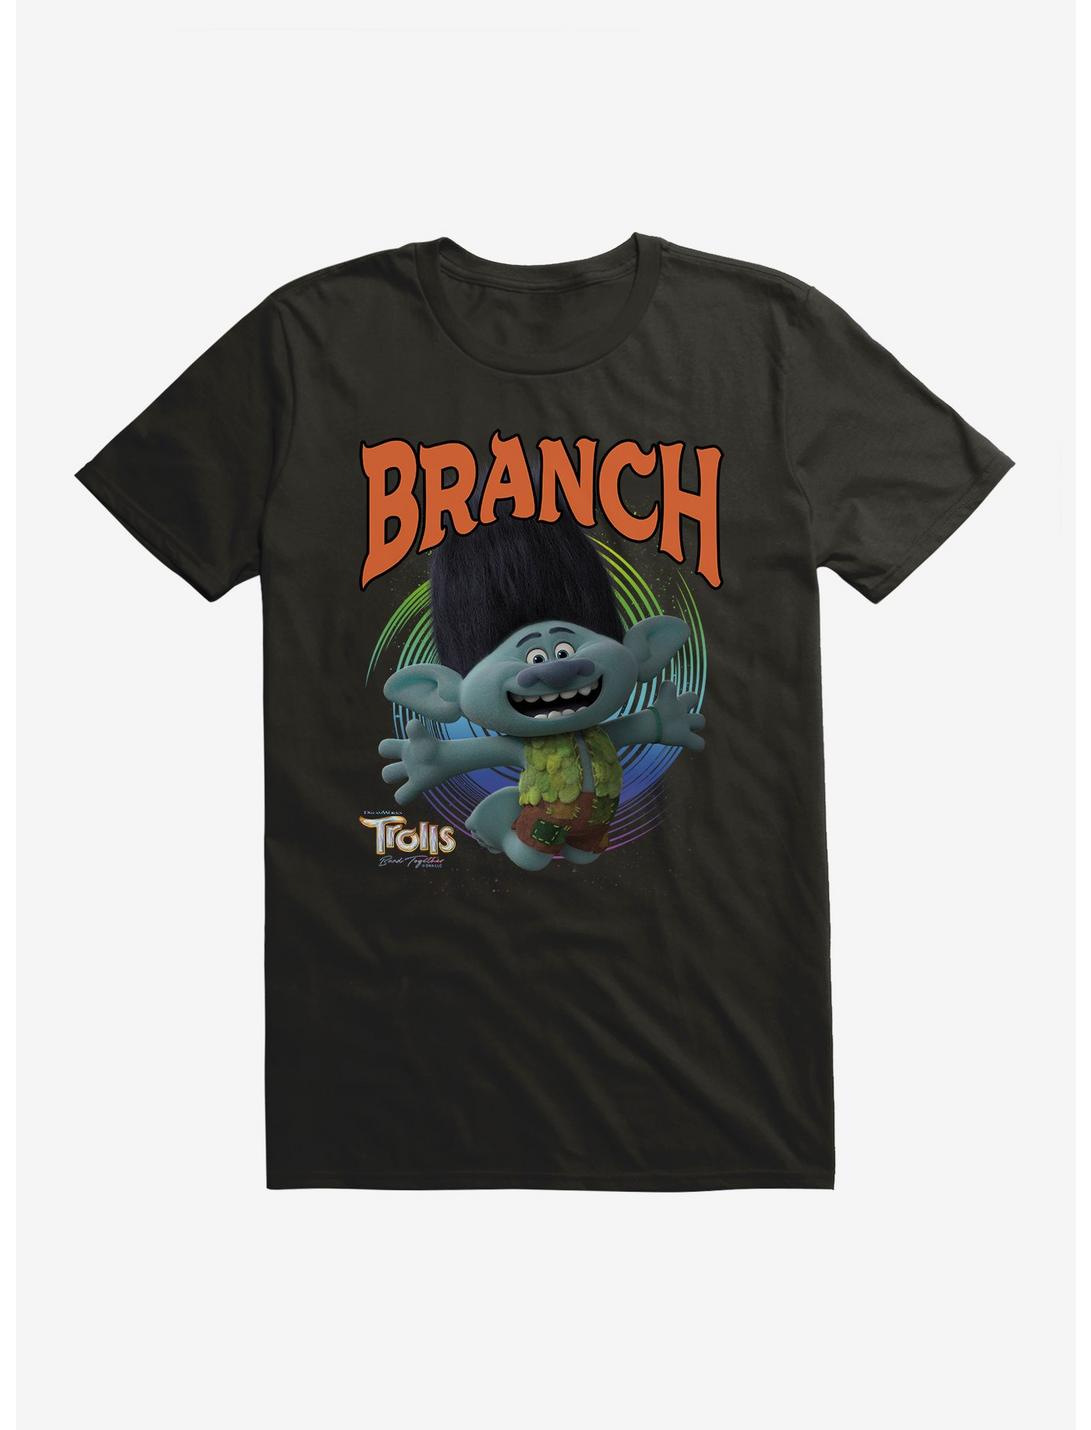 Trolls 3 Band Together Branch T-Shirt, BLACK, hi-res